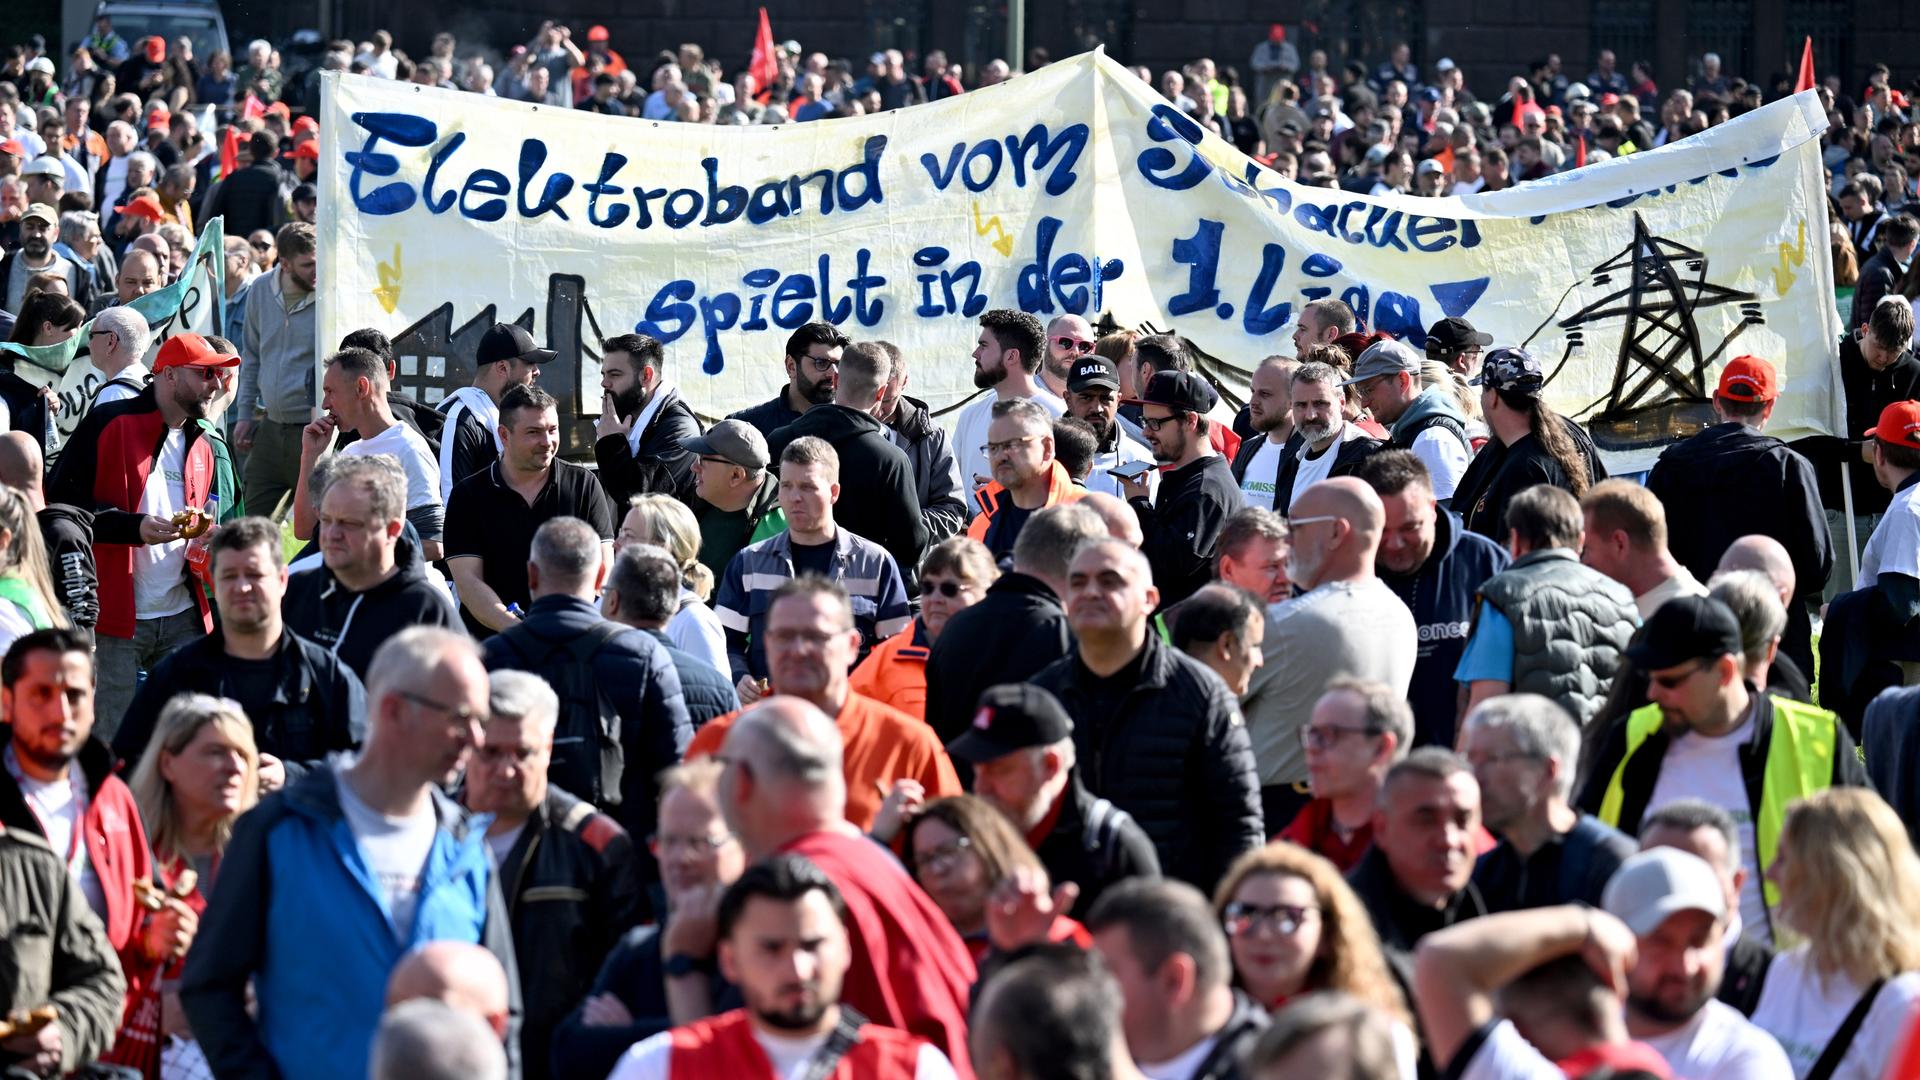 Nordrhein-Westfalen, Duisburg: Gewerkschaftsmitglieder und Stahlarbeiter versammeln sich zu einer Protest-Kundgebung von Beschäftigten der Thyssenkrupp-Stahlsparte.